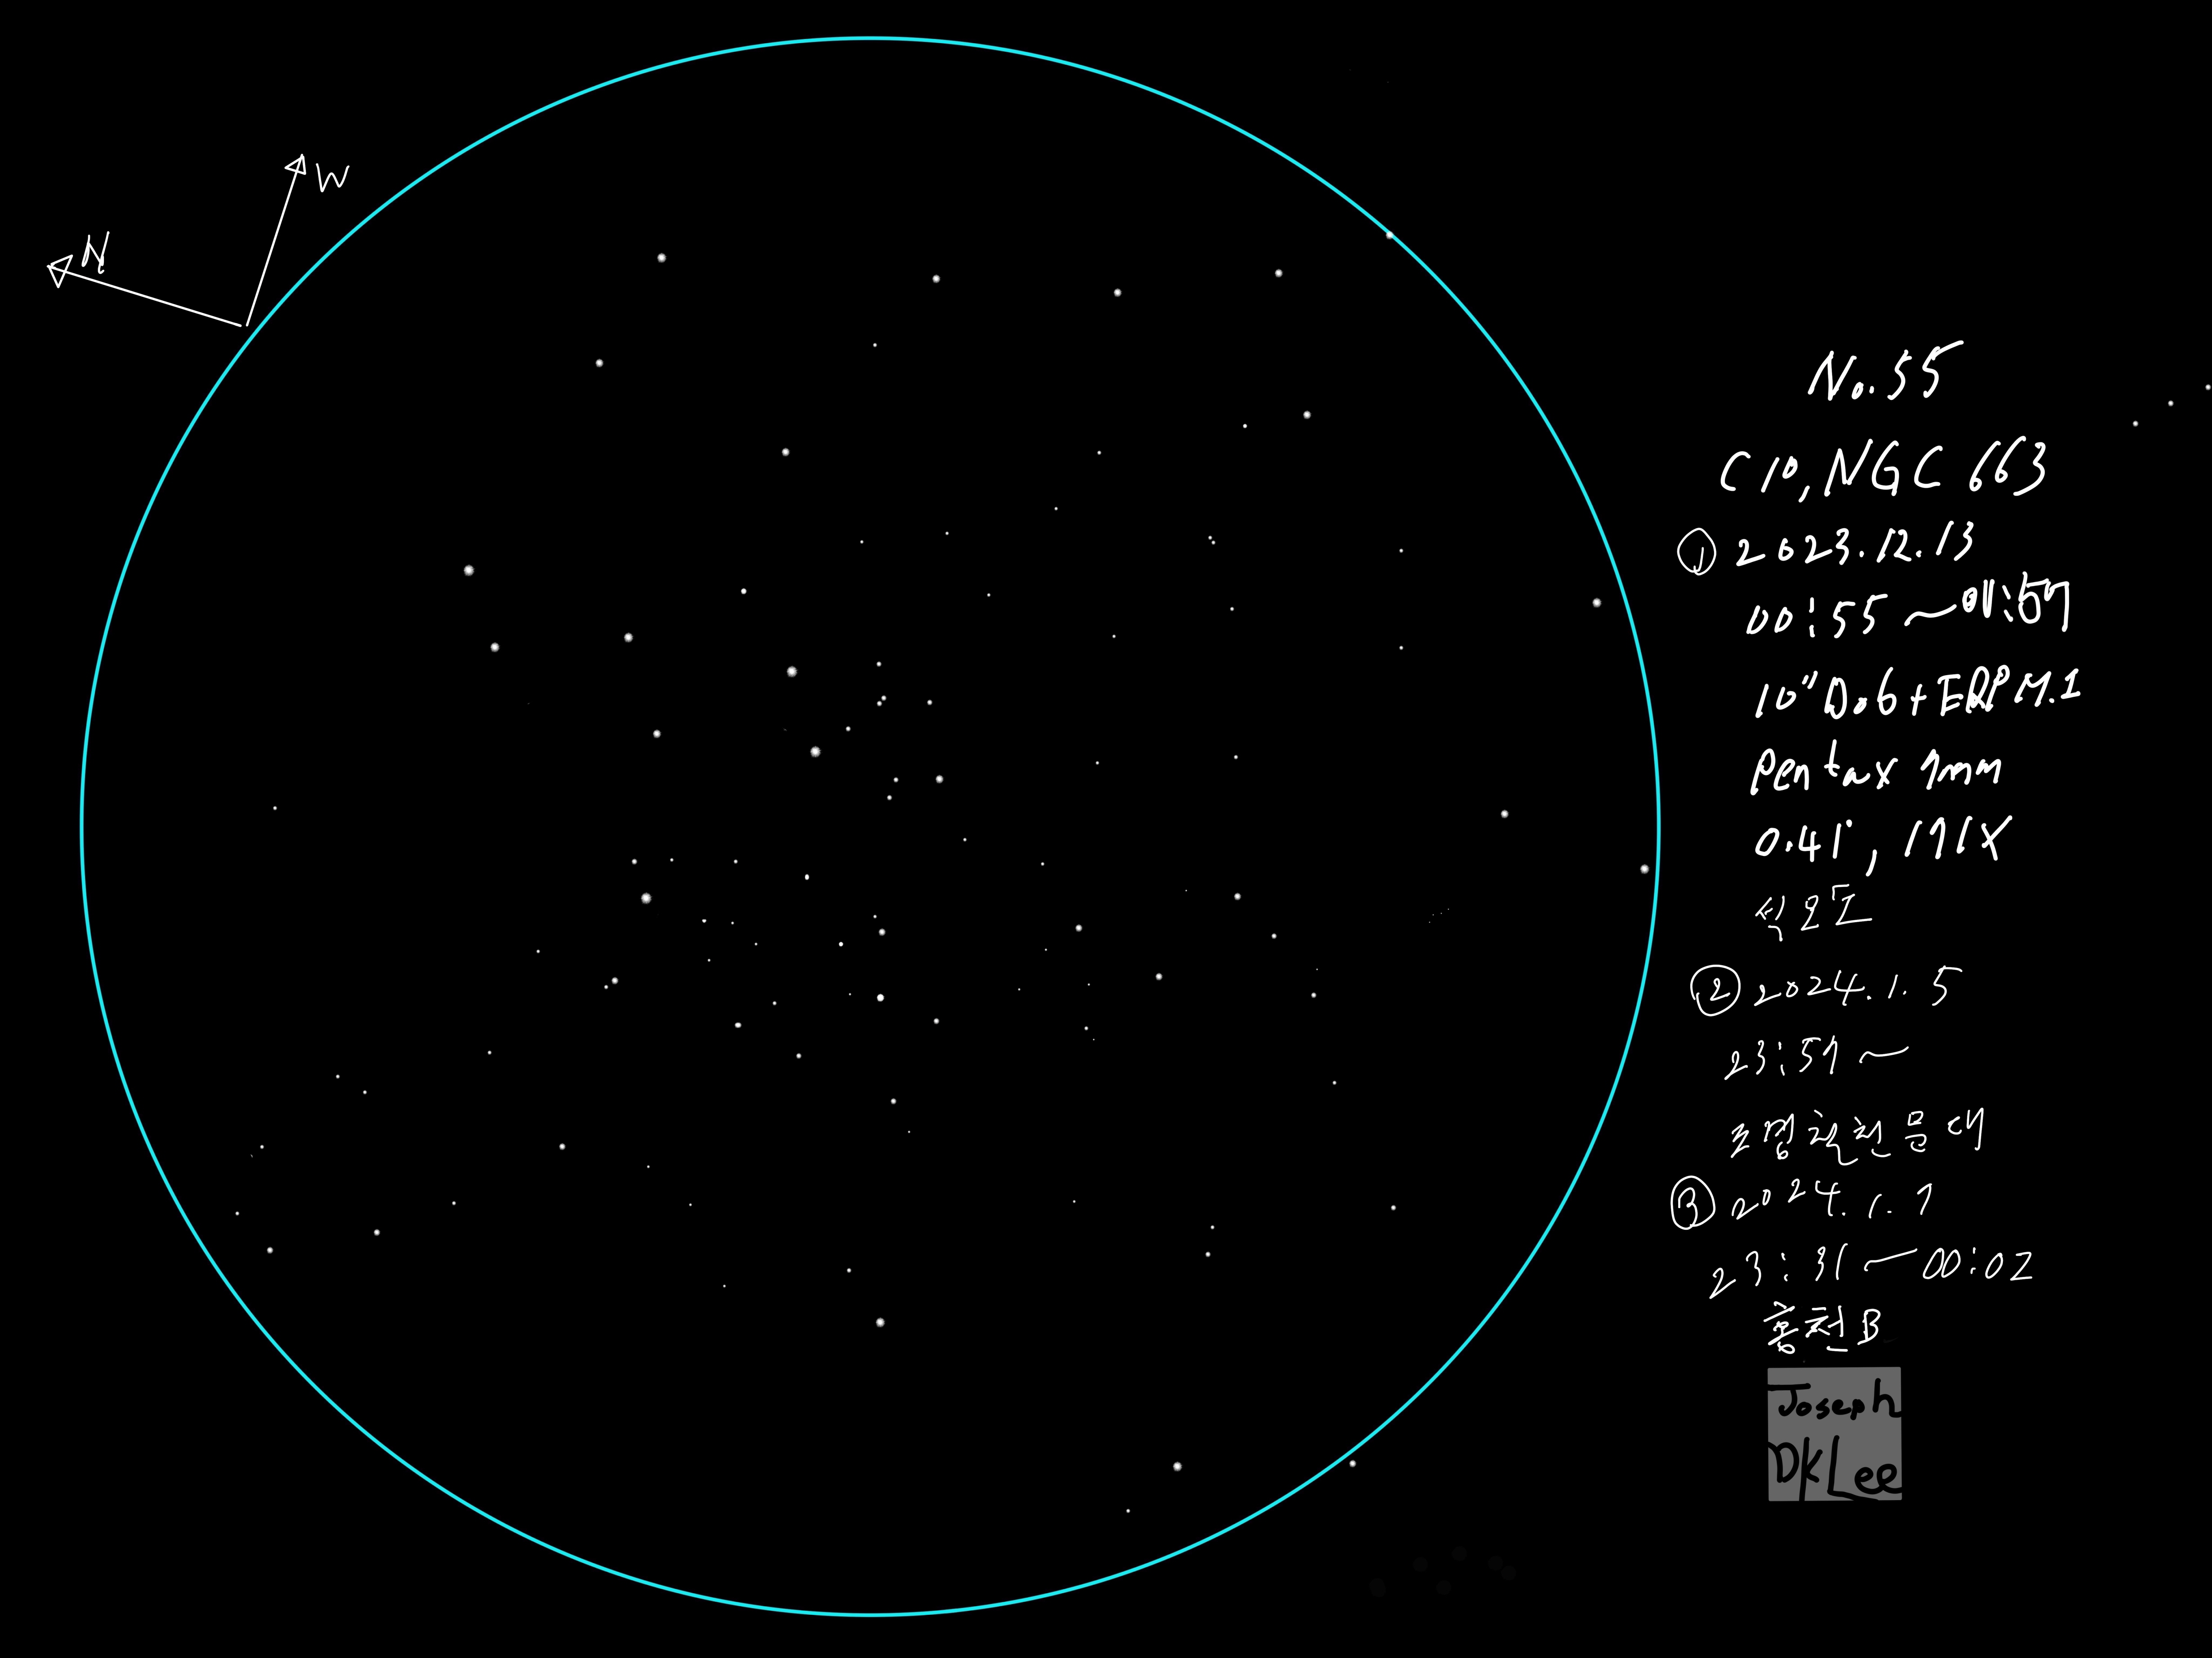 55_C10_NGC663_240107_홍천B-1[크기변환].jpg